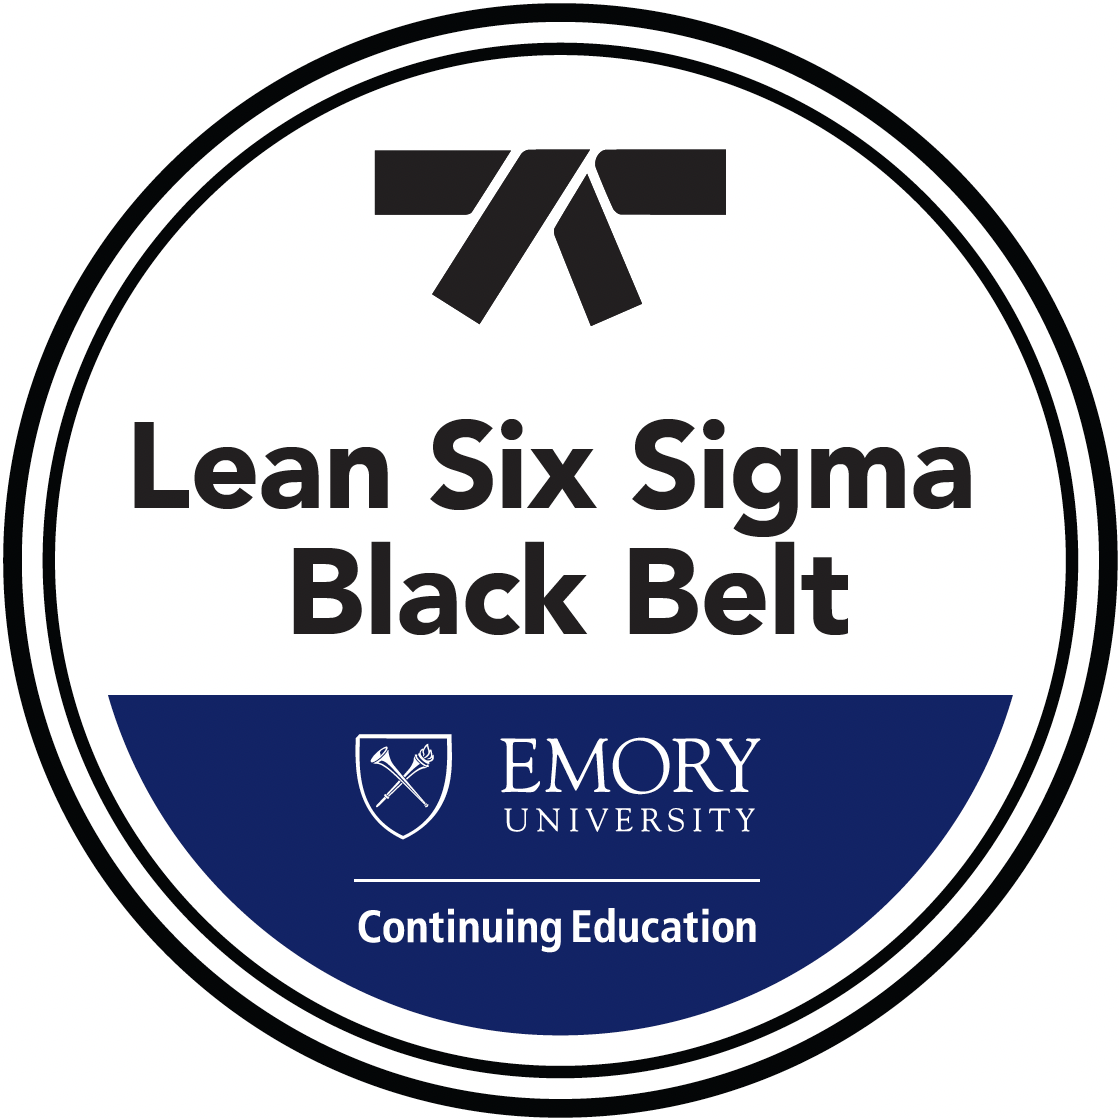 Lean Six Sigma Black Belt Badge